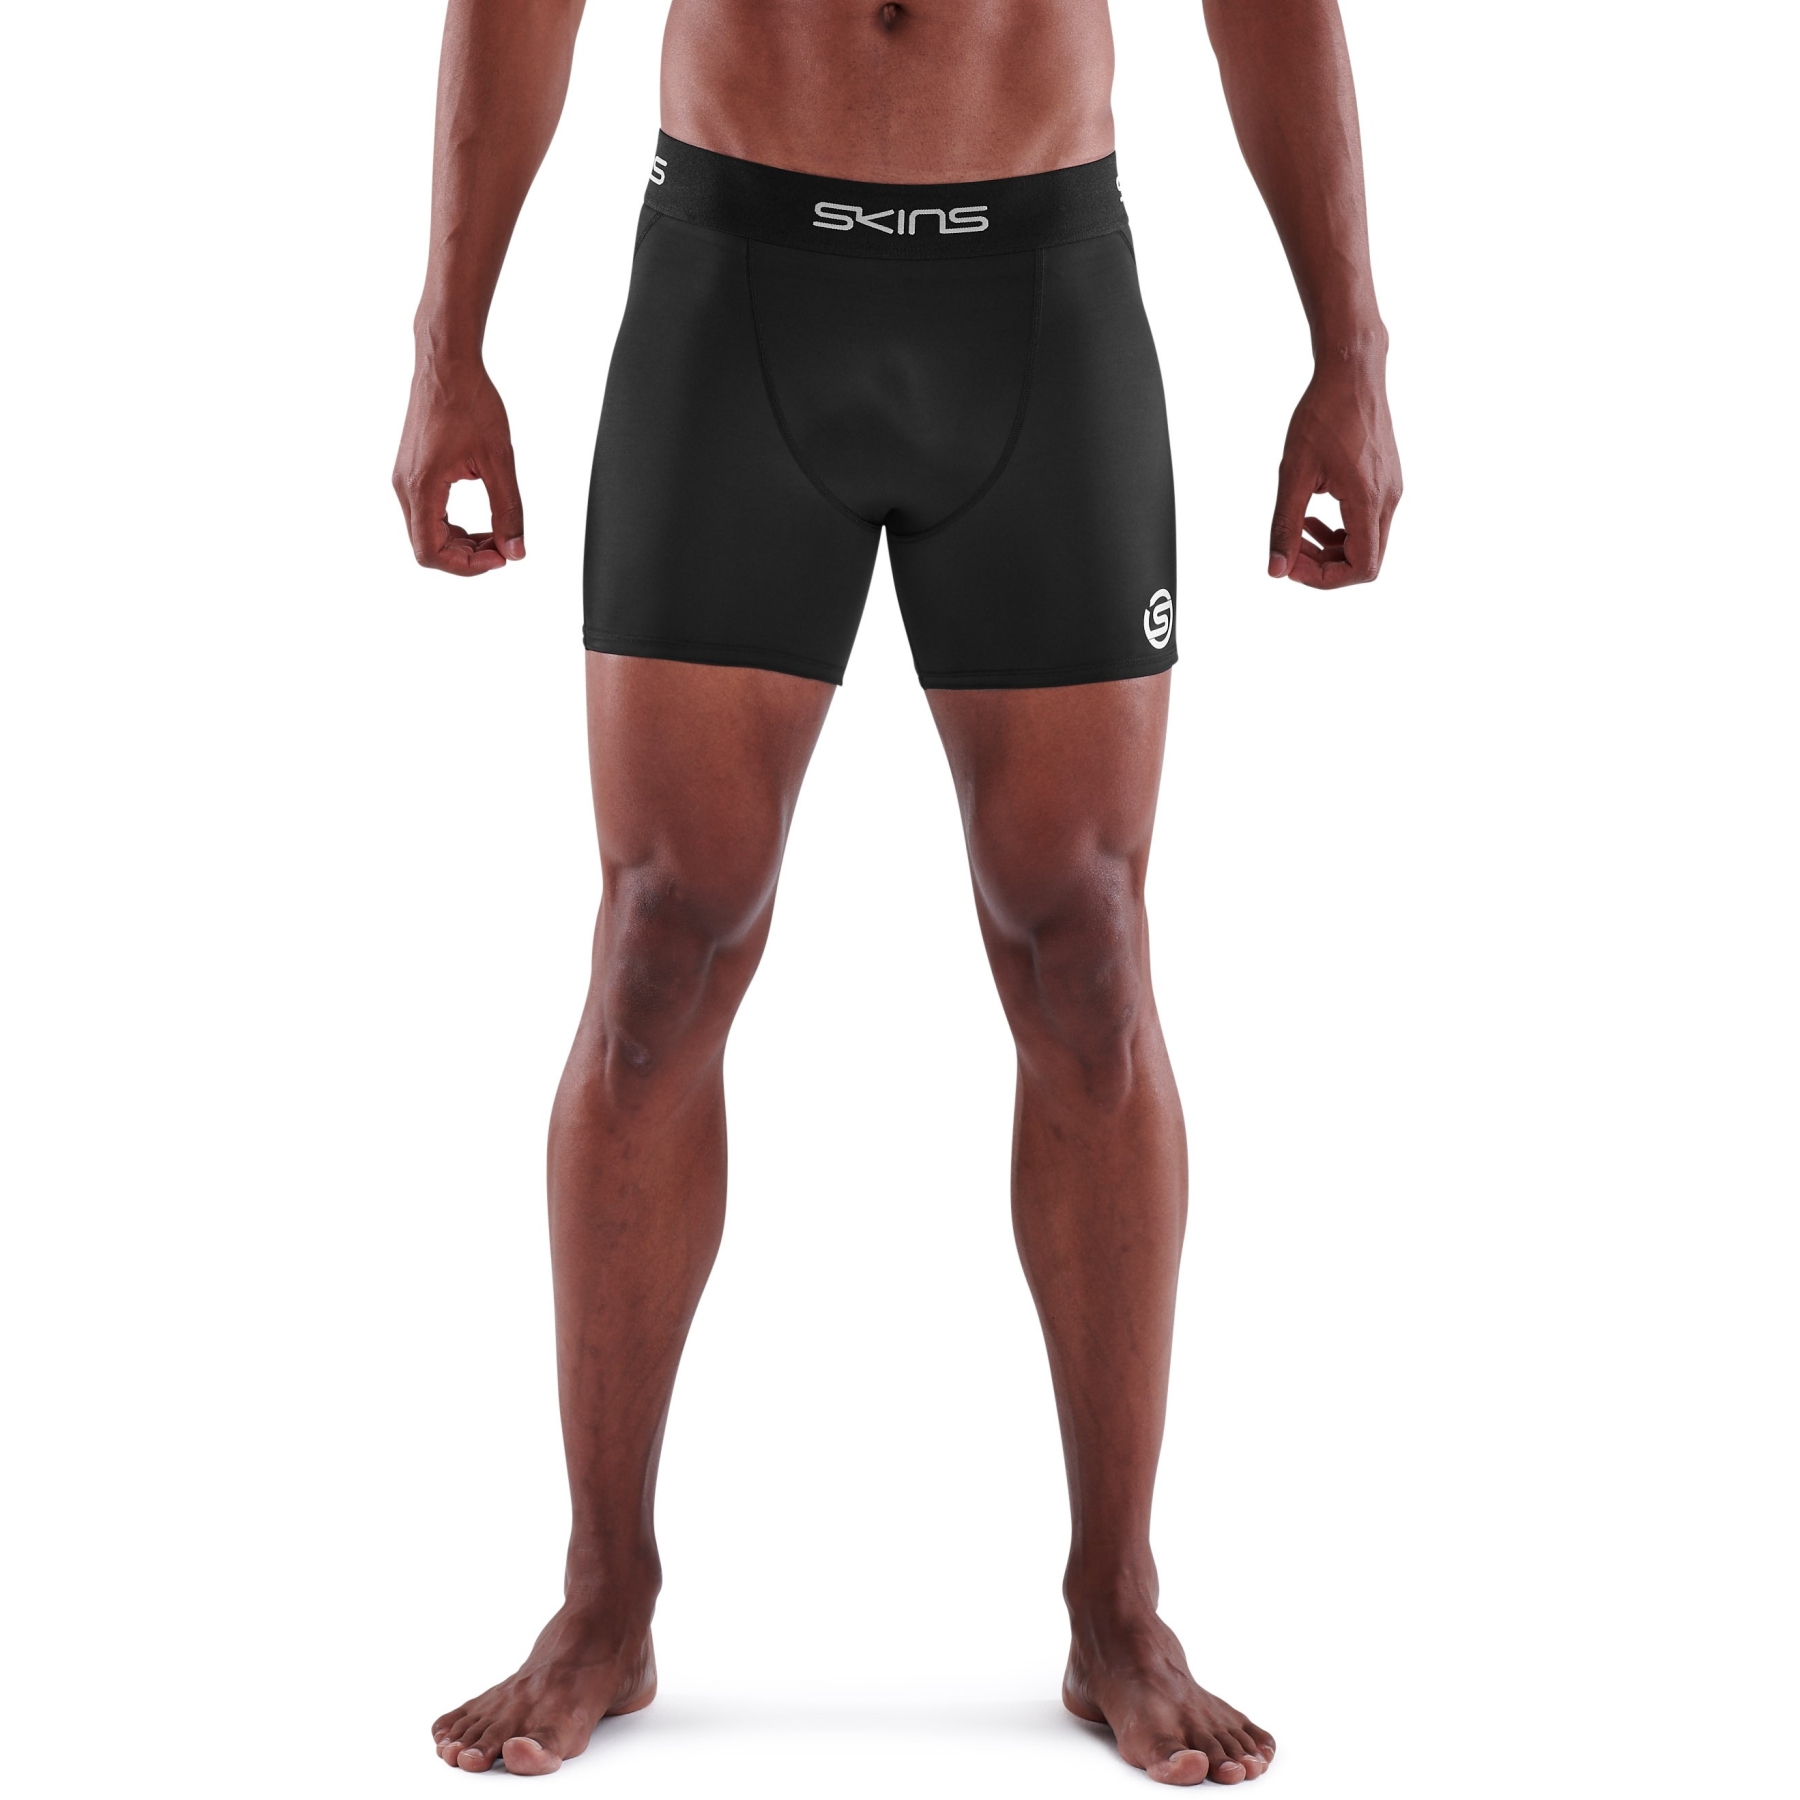 Produktbild von SKINS 1-Series Fitness-Shorts - Schwarz